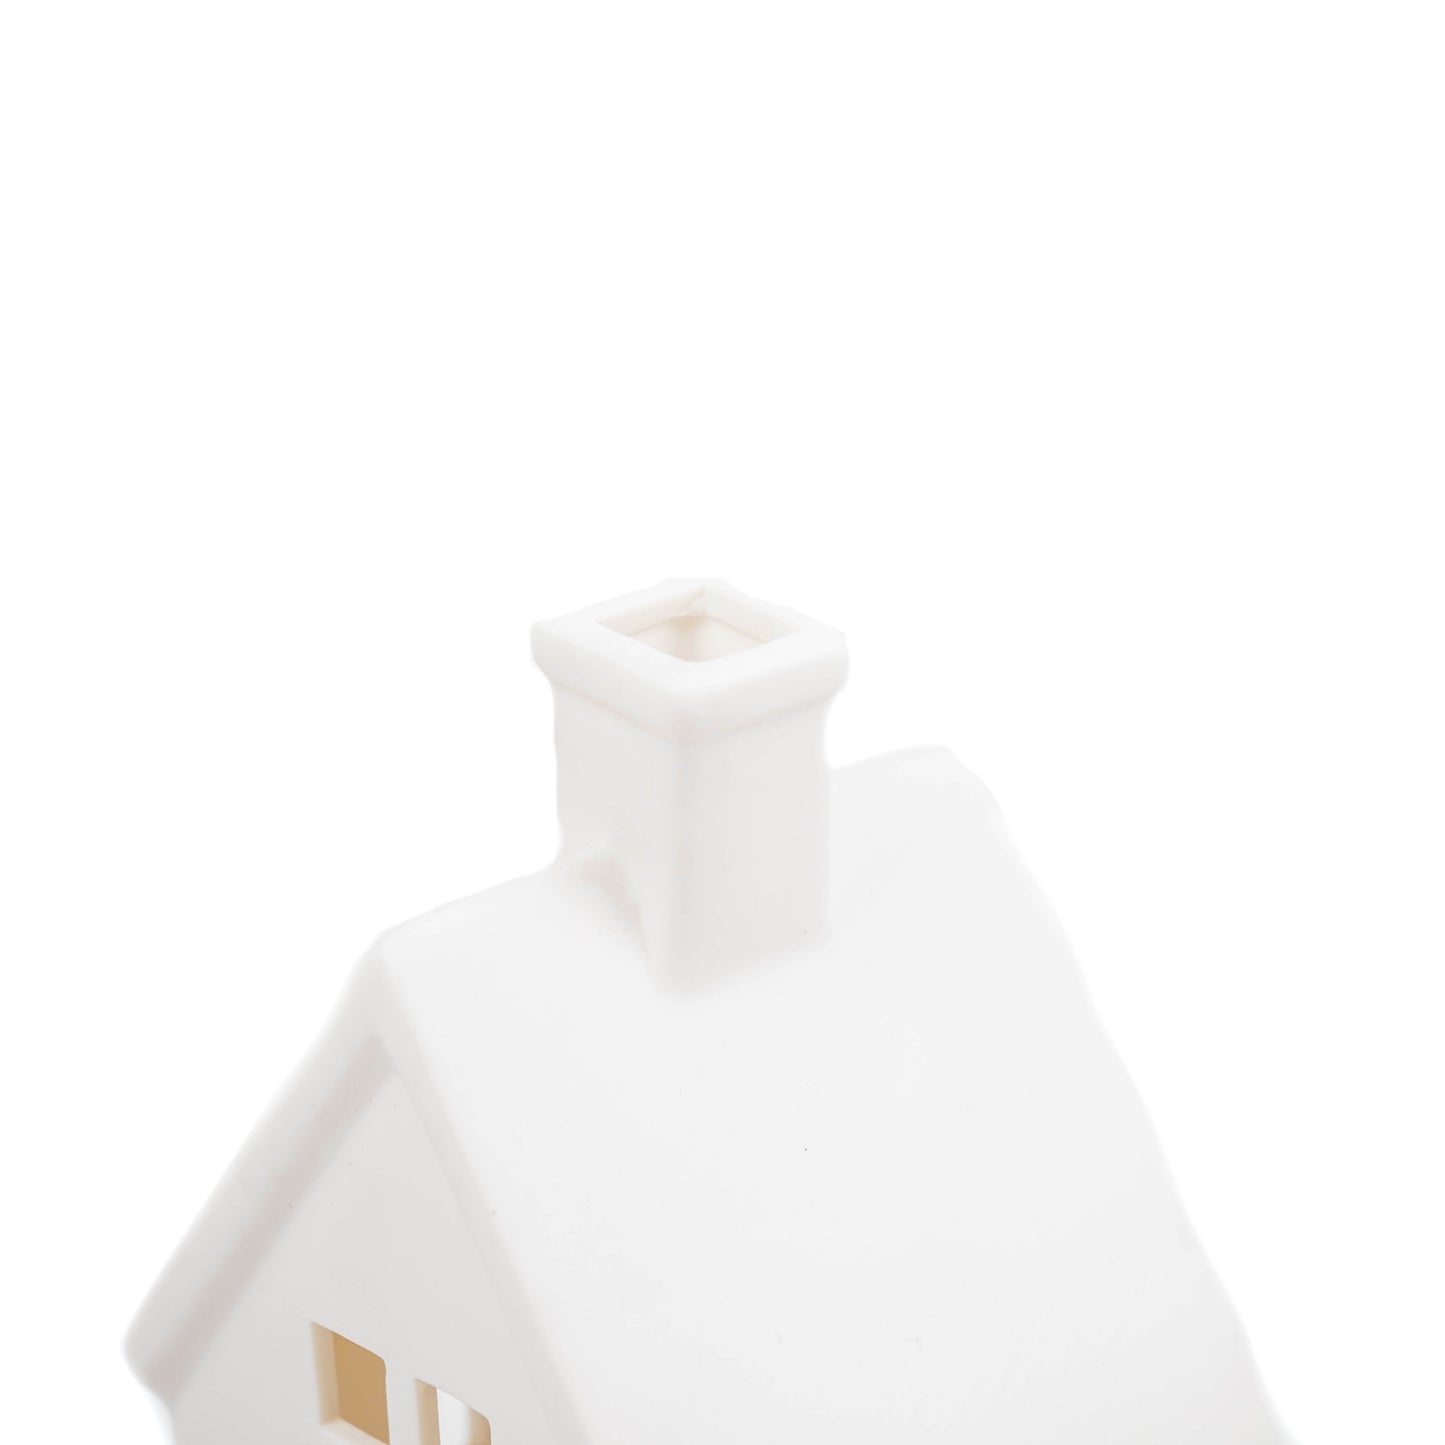 HV Family House Ledlight - 10x8x19 cm - White